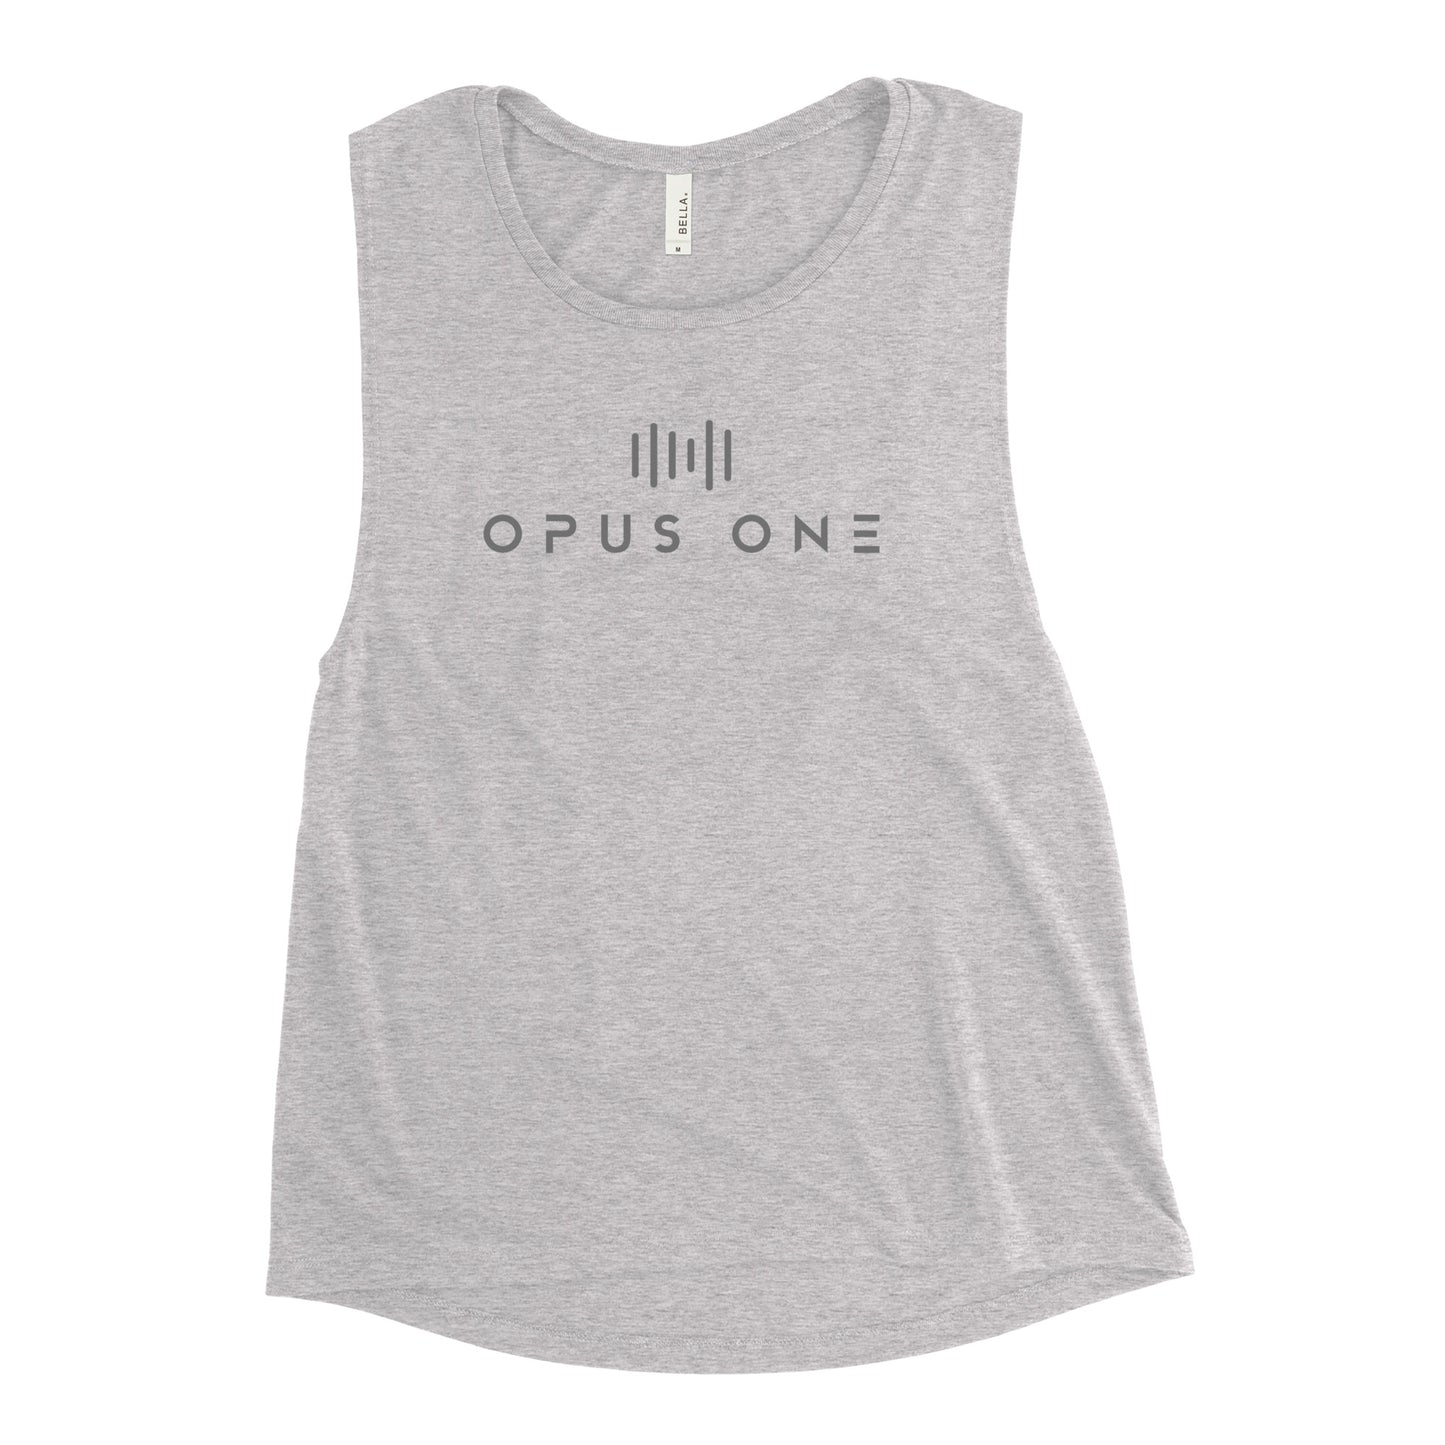 Opus One (v1) Ladies’ Muscle Tank